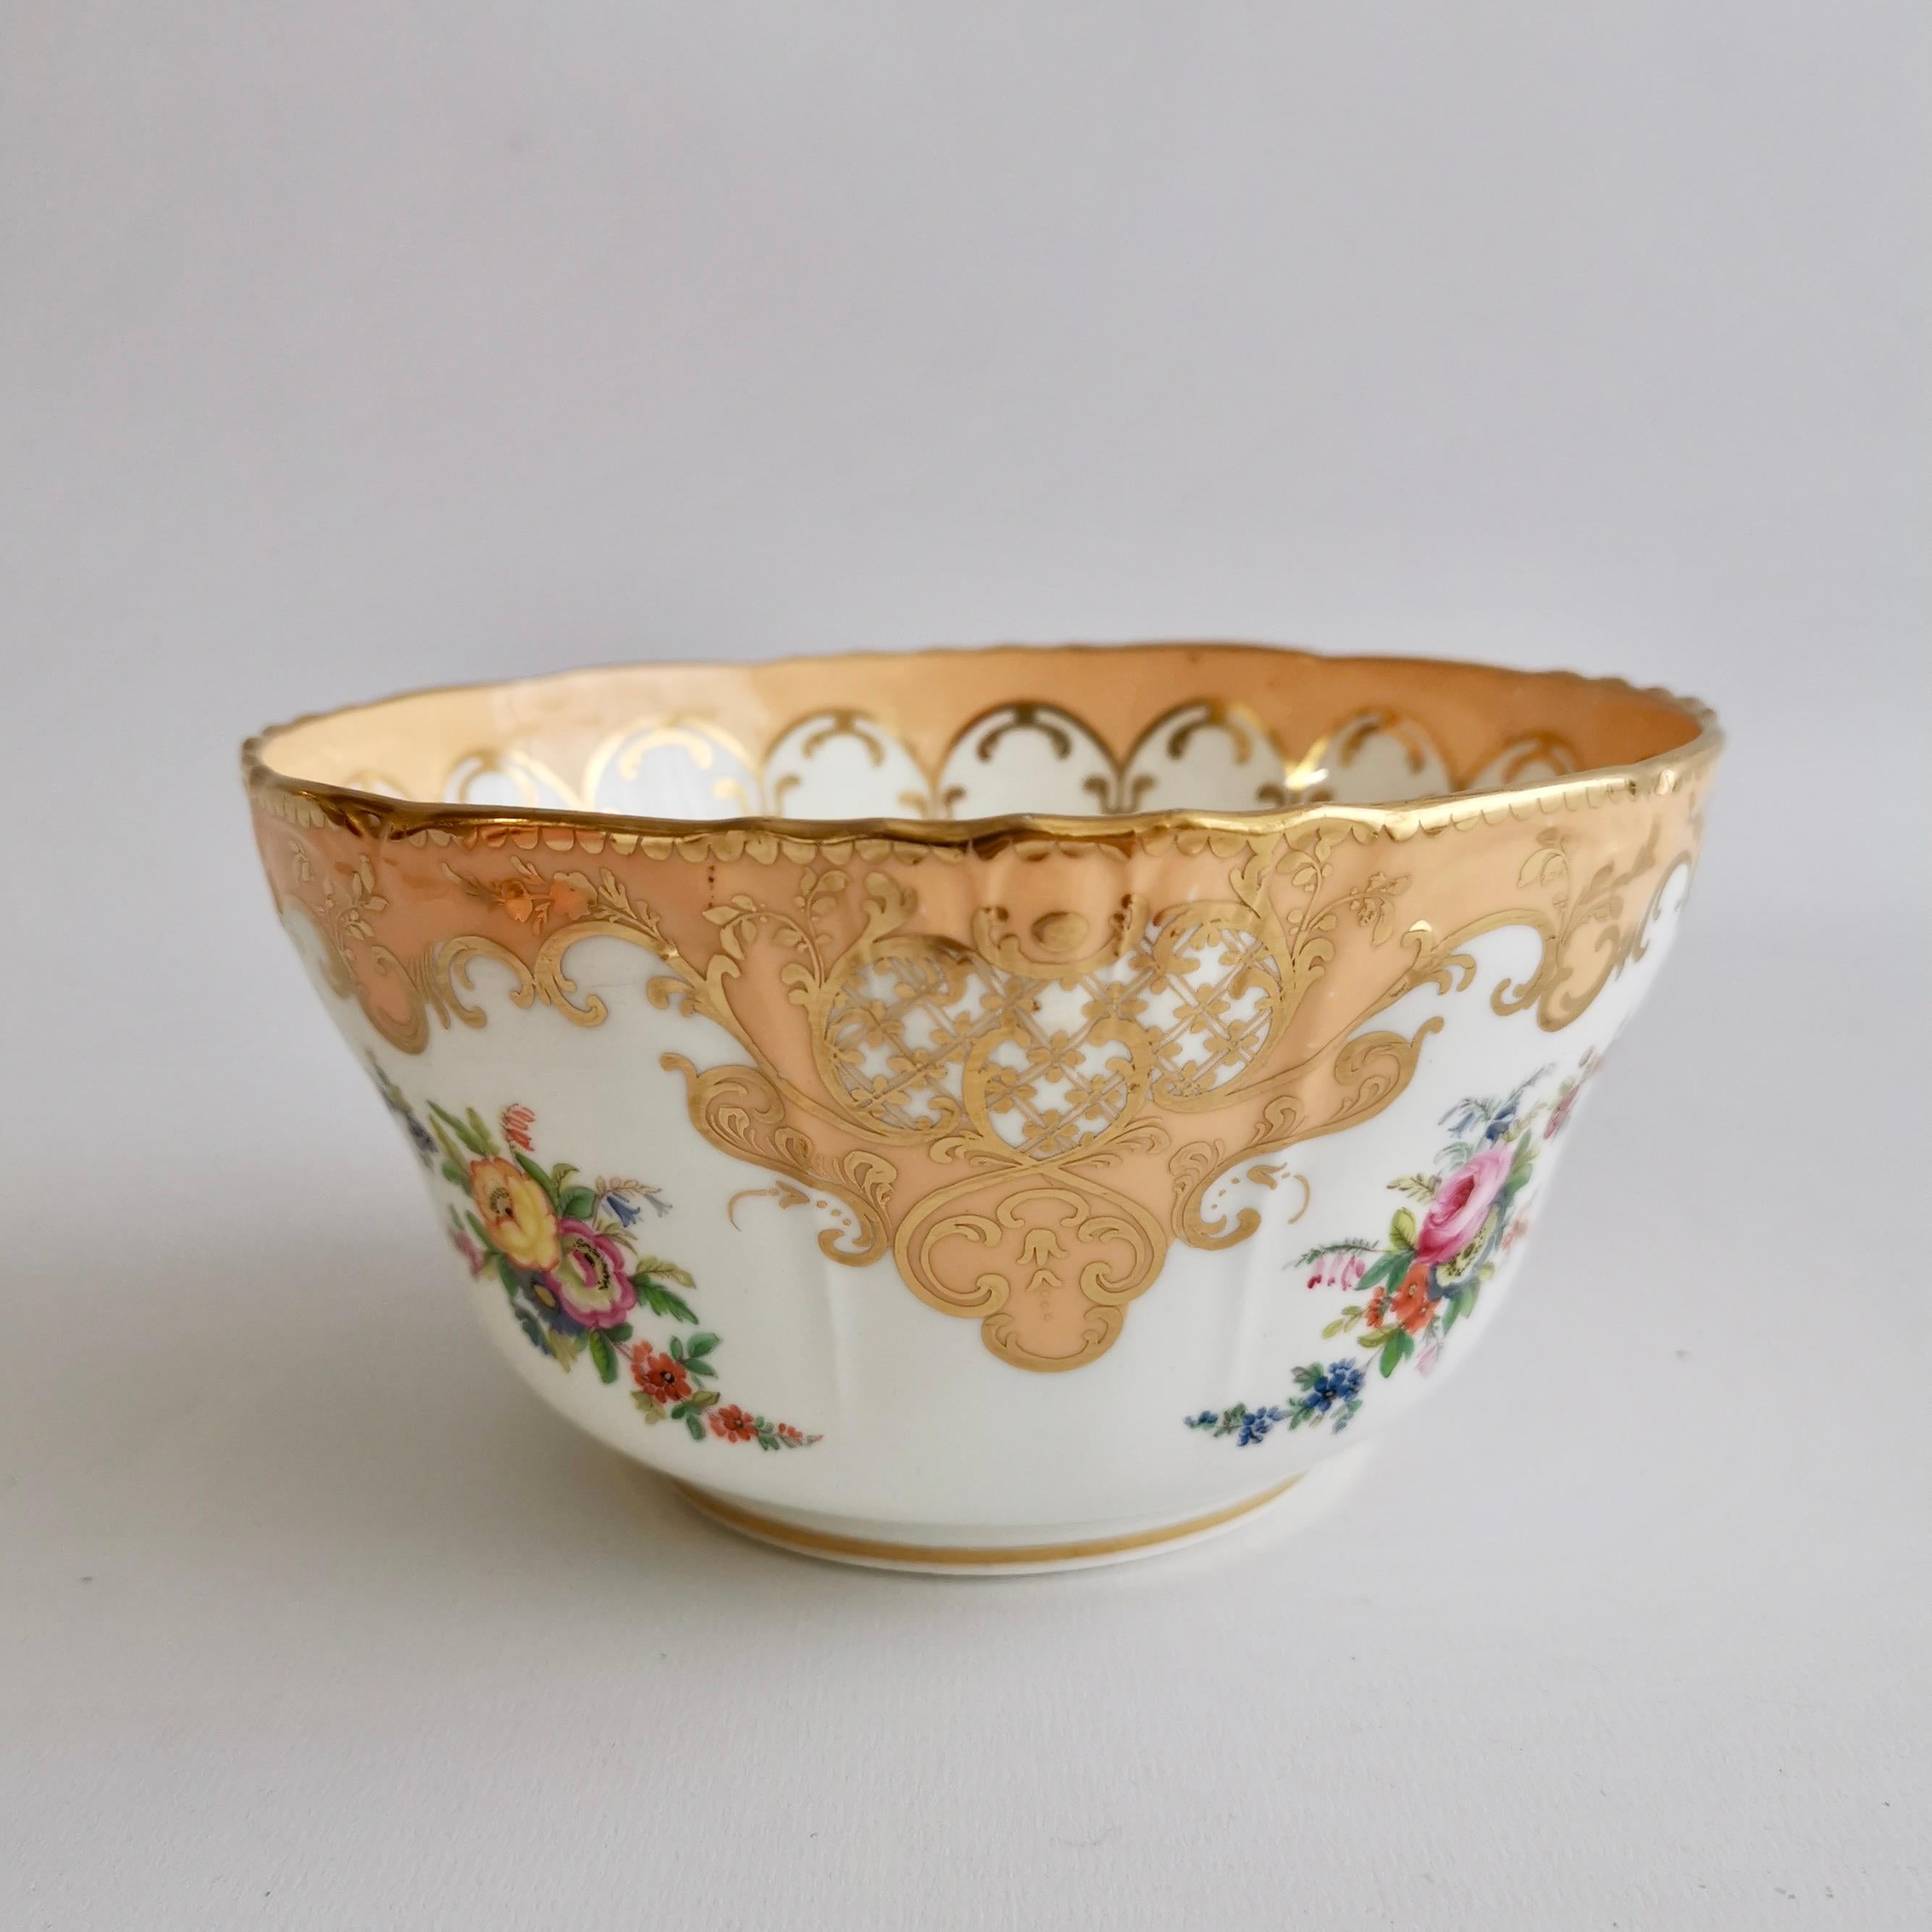 Victorian Minton Porcelain Slop Bowl, Apricot Orange Ground, Gilt and Flowers, ca 1845